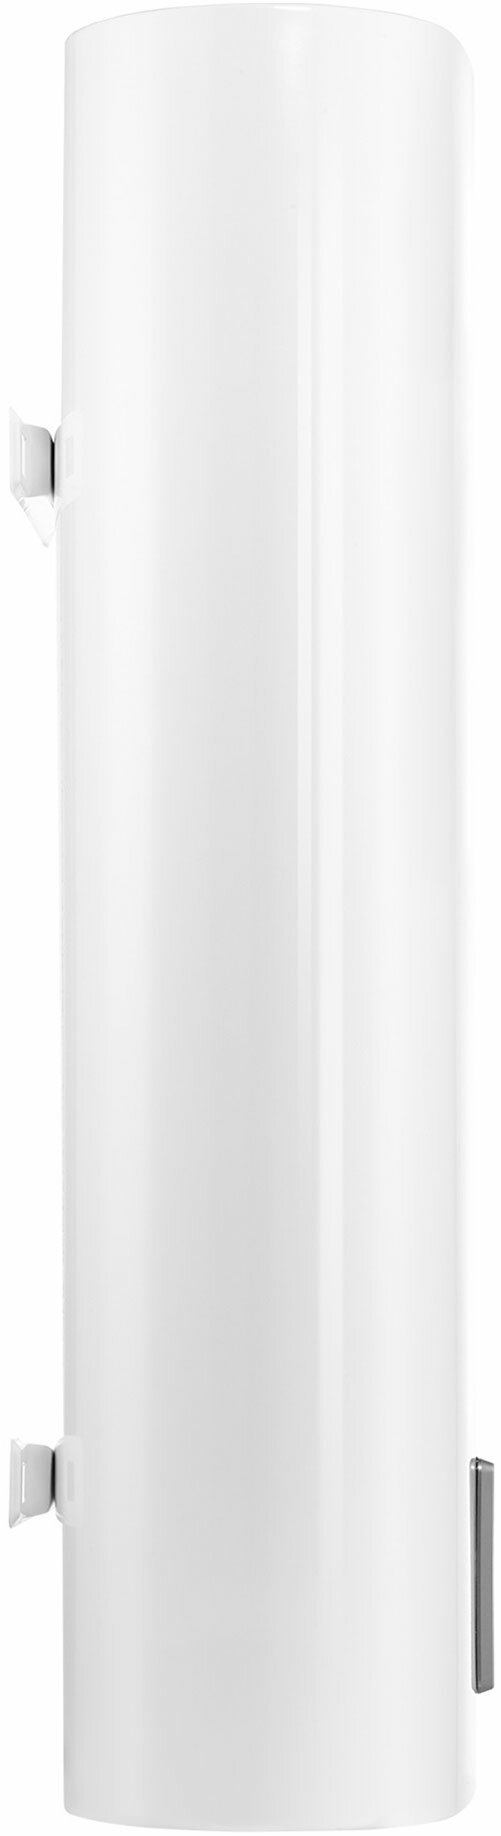 Накопительный водонагреватель Electrolux EWH 50 SmartInverter PRO электрический + акустическая колонка Electrolux Mini Beat беспроводная - фотография № 3